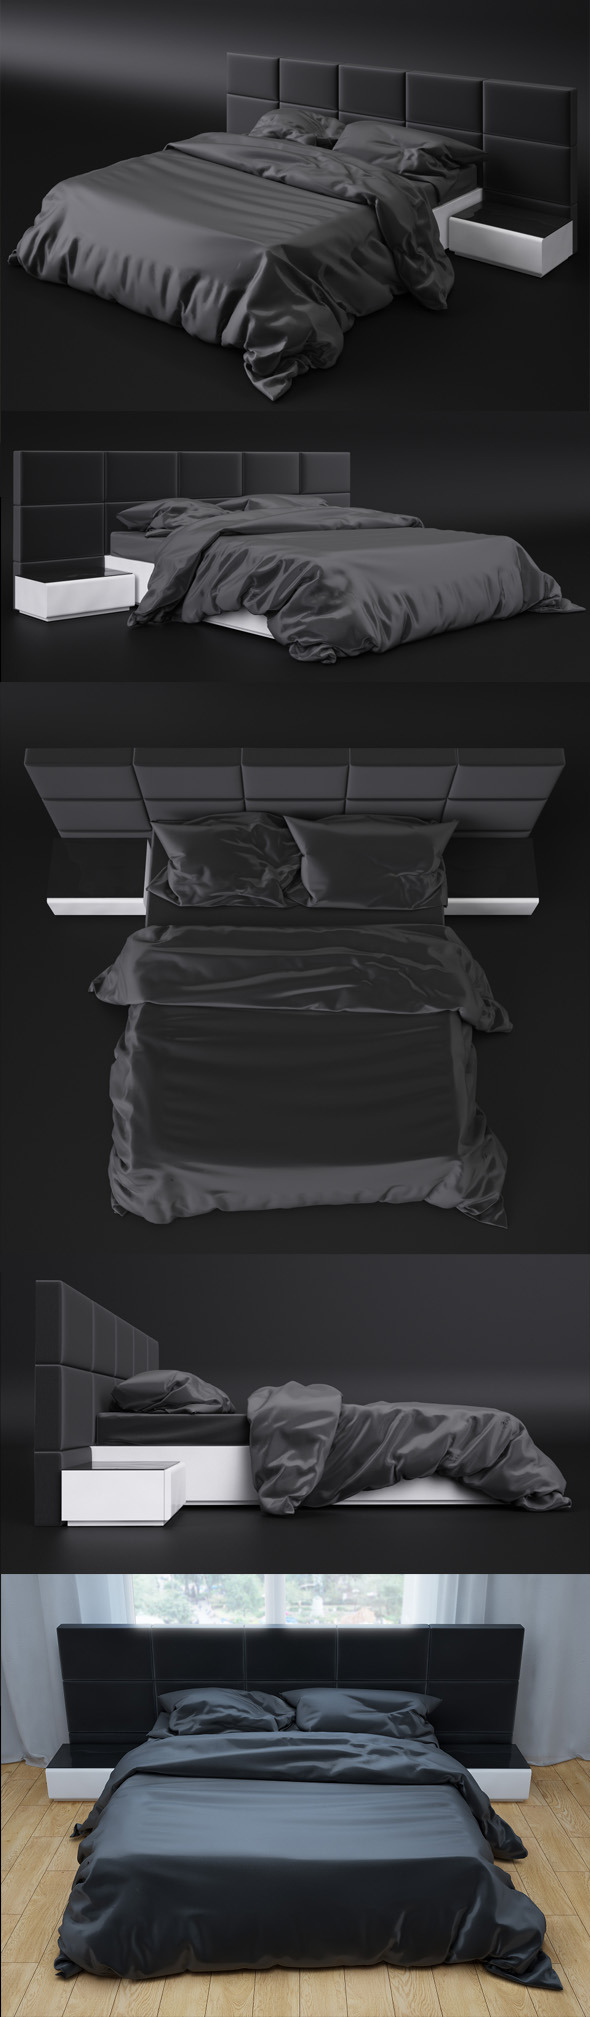 Bed sicilia premium - 3Docean 6048058